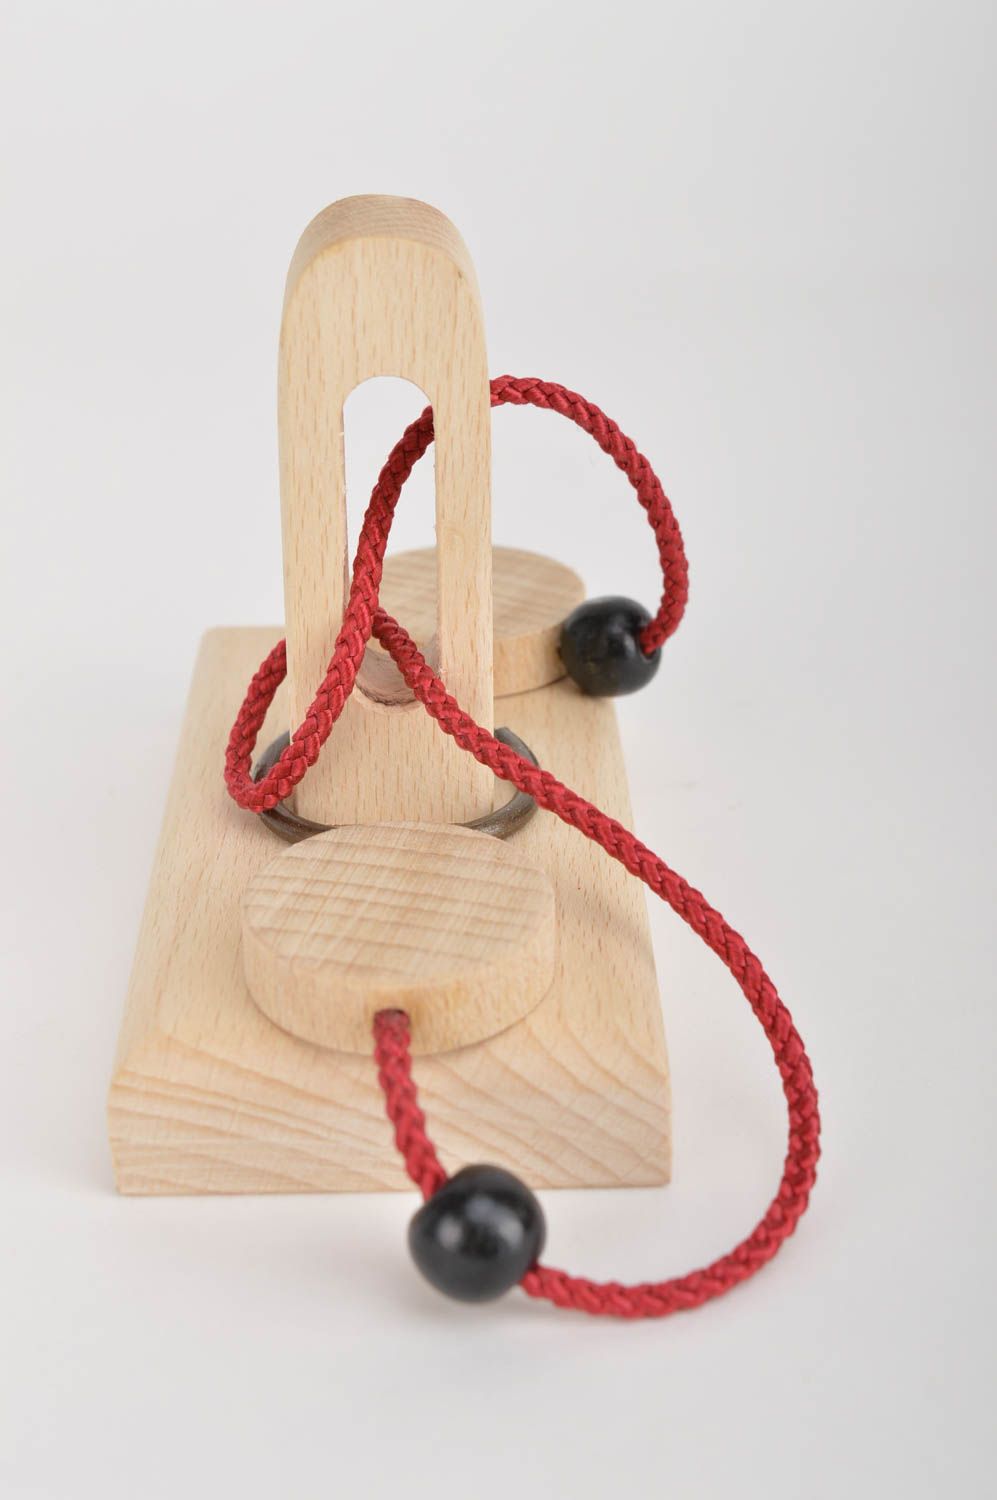 Игрушка ручной работы кольцо-головоломка игрушка из дерева от 3 лет развивающая фото 4